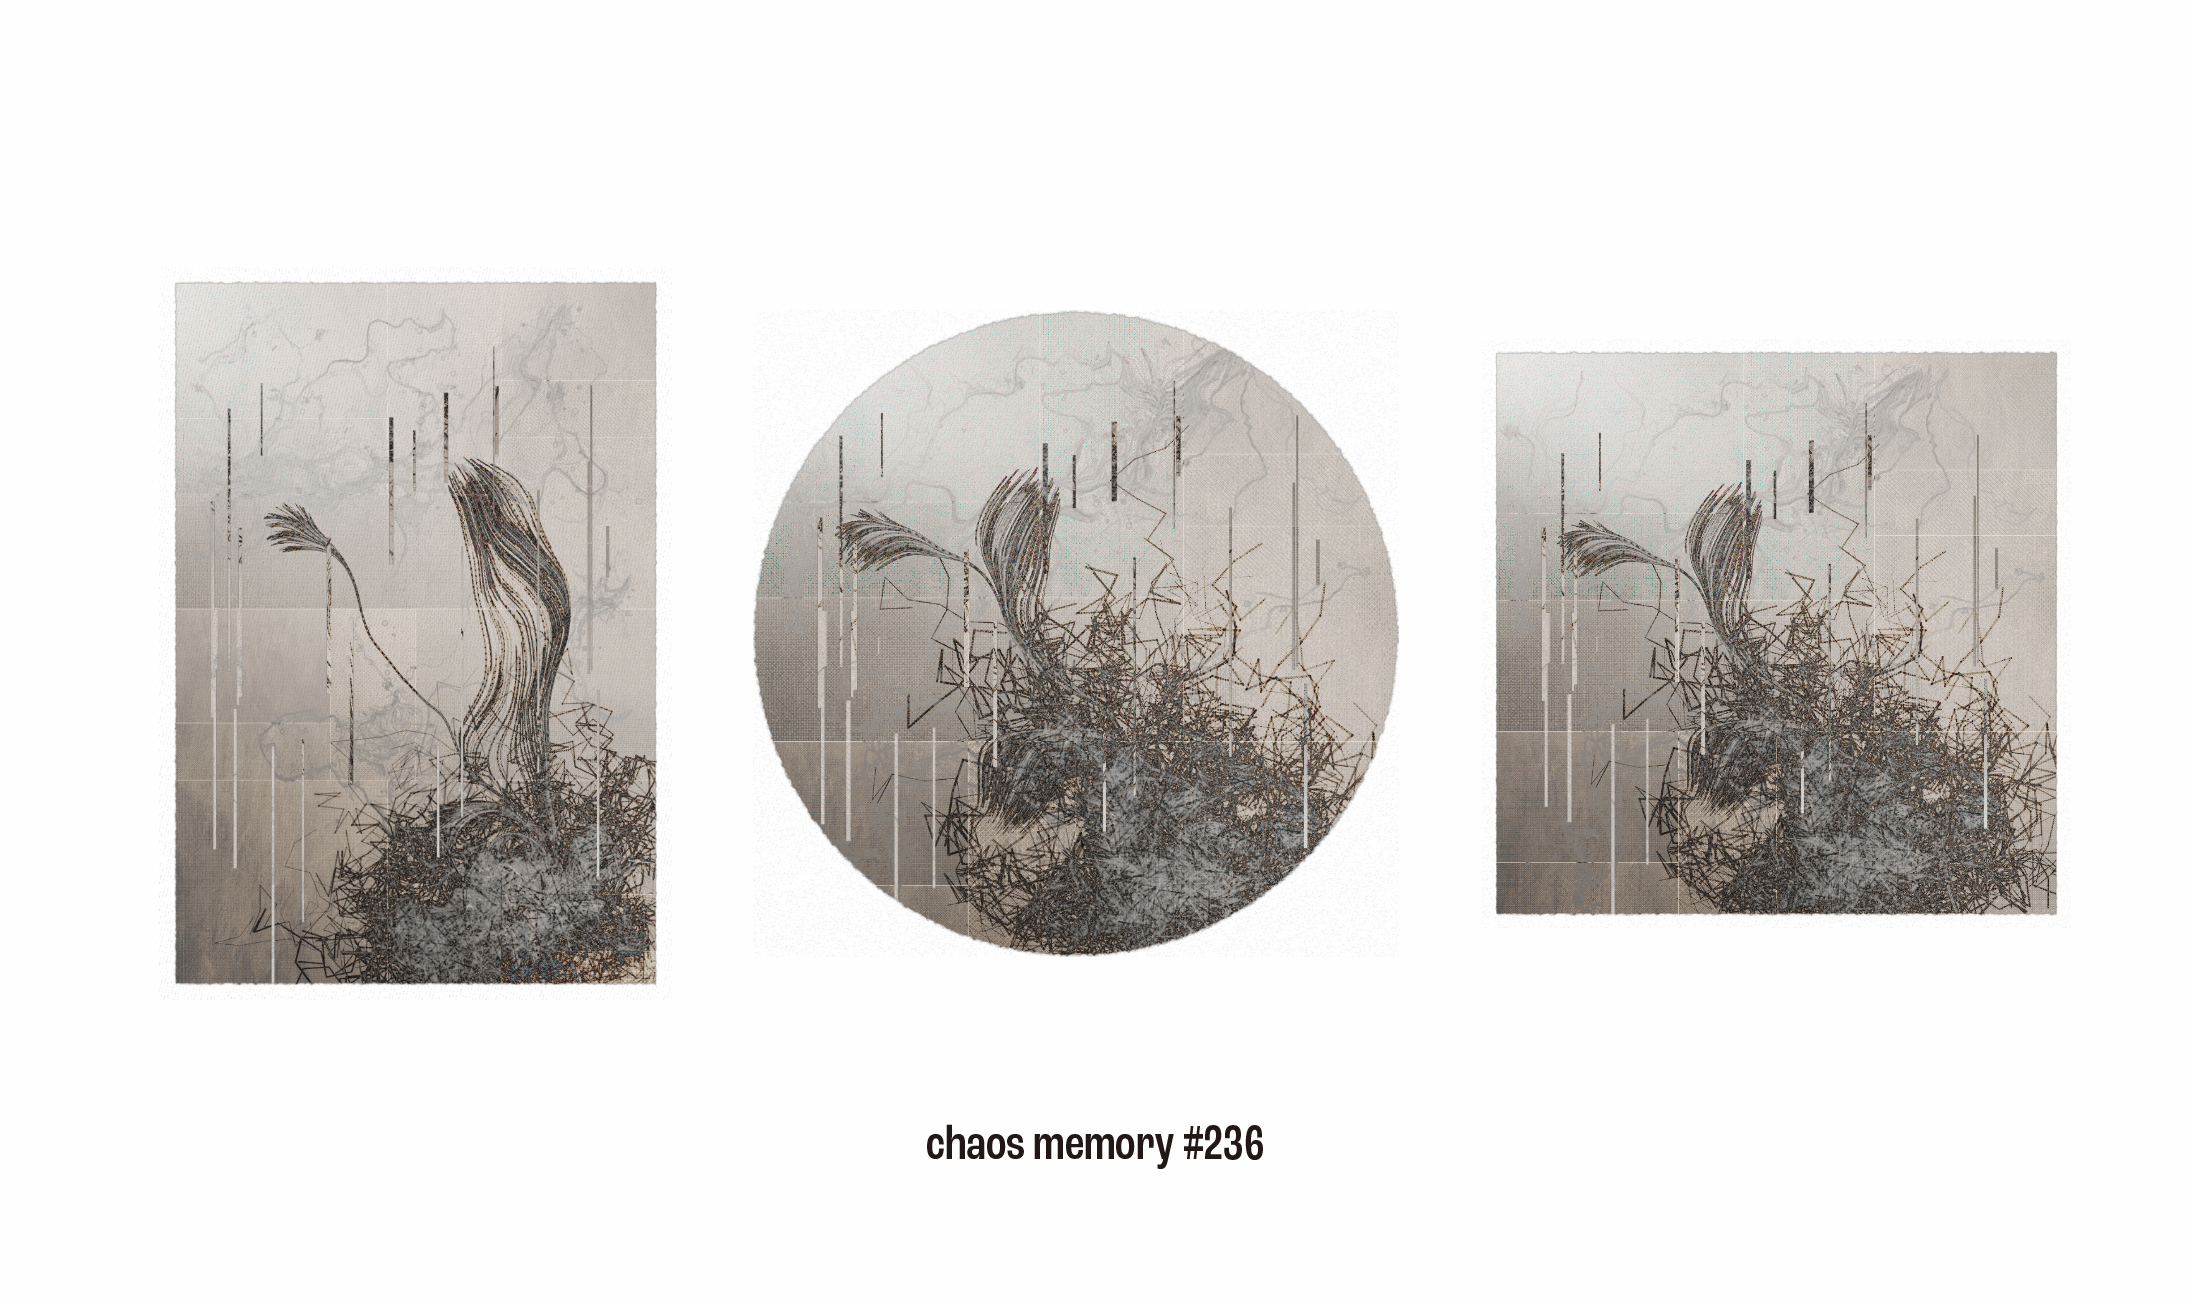 Chaos Memory has three shapes at the same time